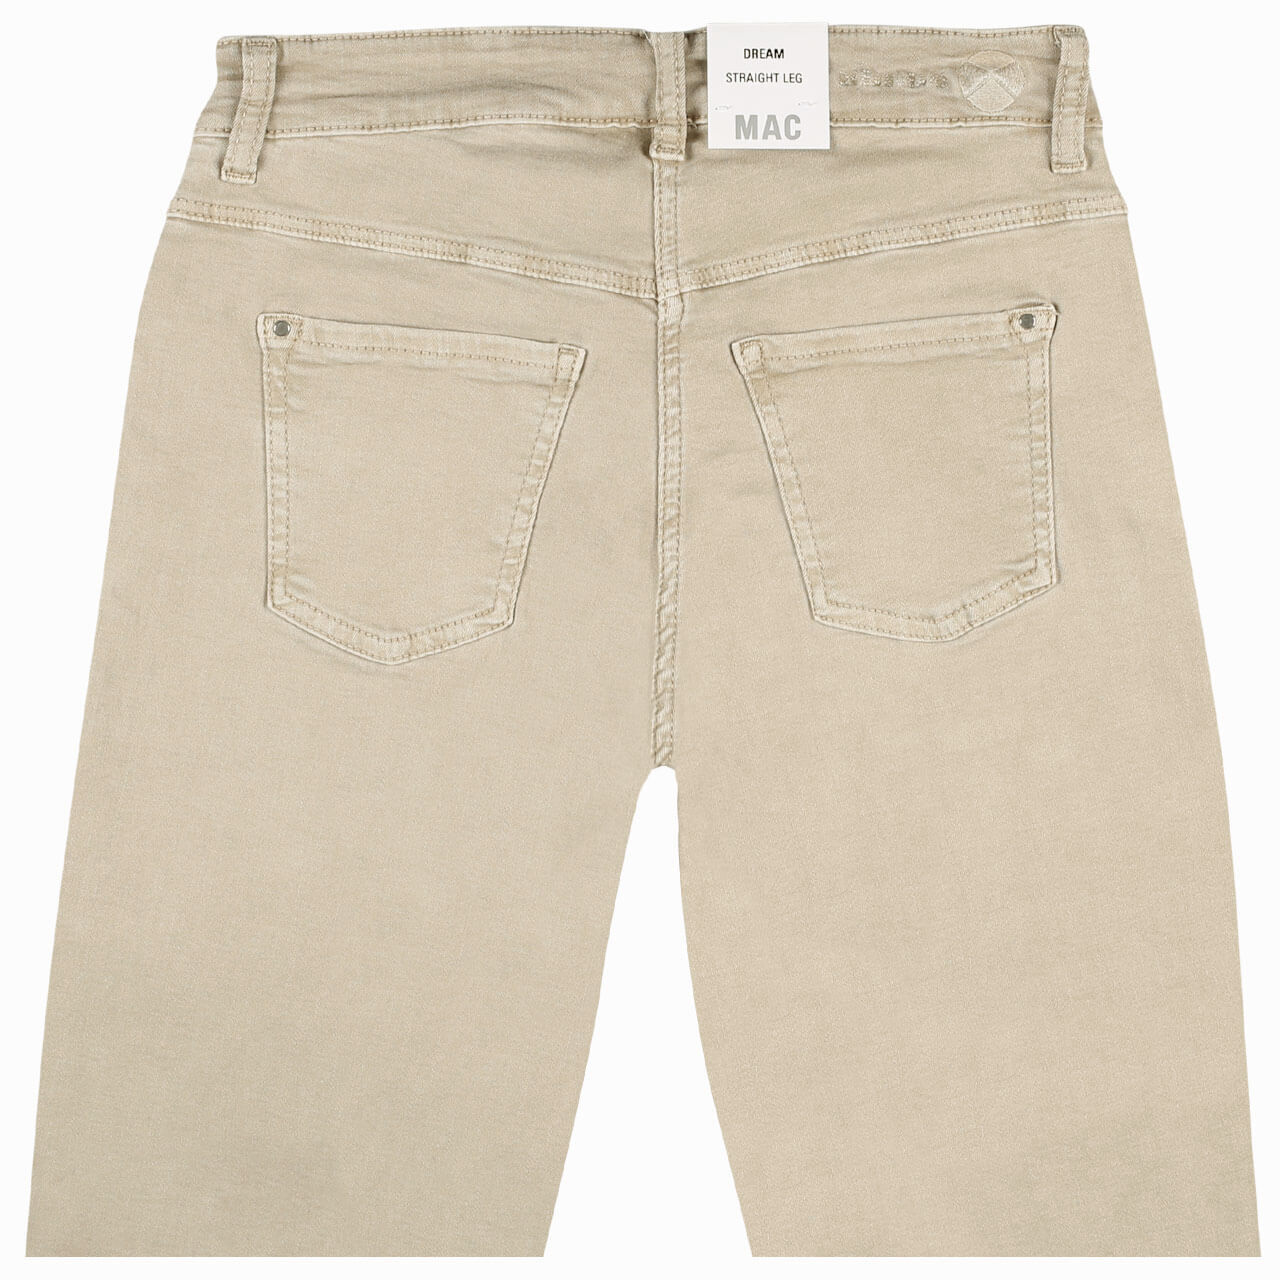 MAC Jeans Dream für Damen in Hellbeige, FarbNr.: 214W